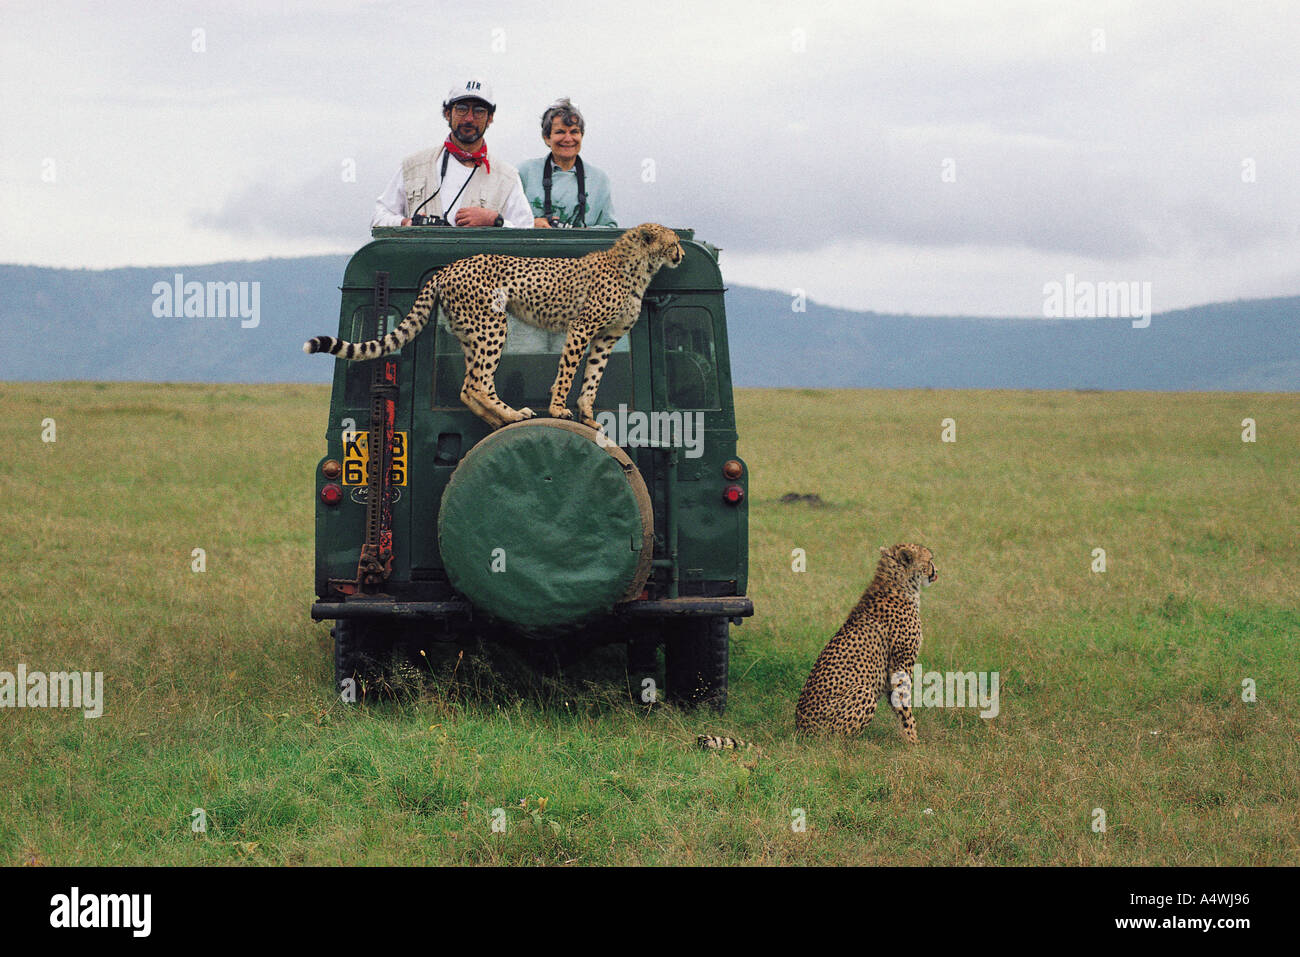 Hembra silvestre habituados cheetah pararse en la rueda de repuesto del Land Rover en la Reserva Nacional de Masai Mara en Kenya África Oriental Foto de stock